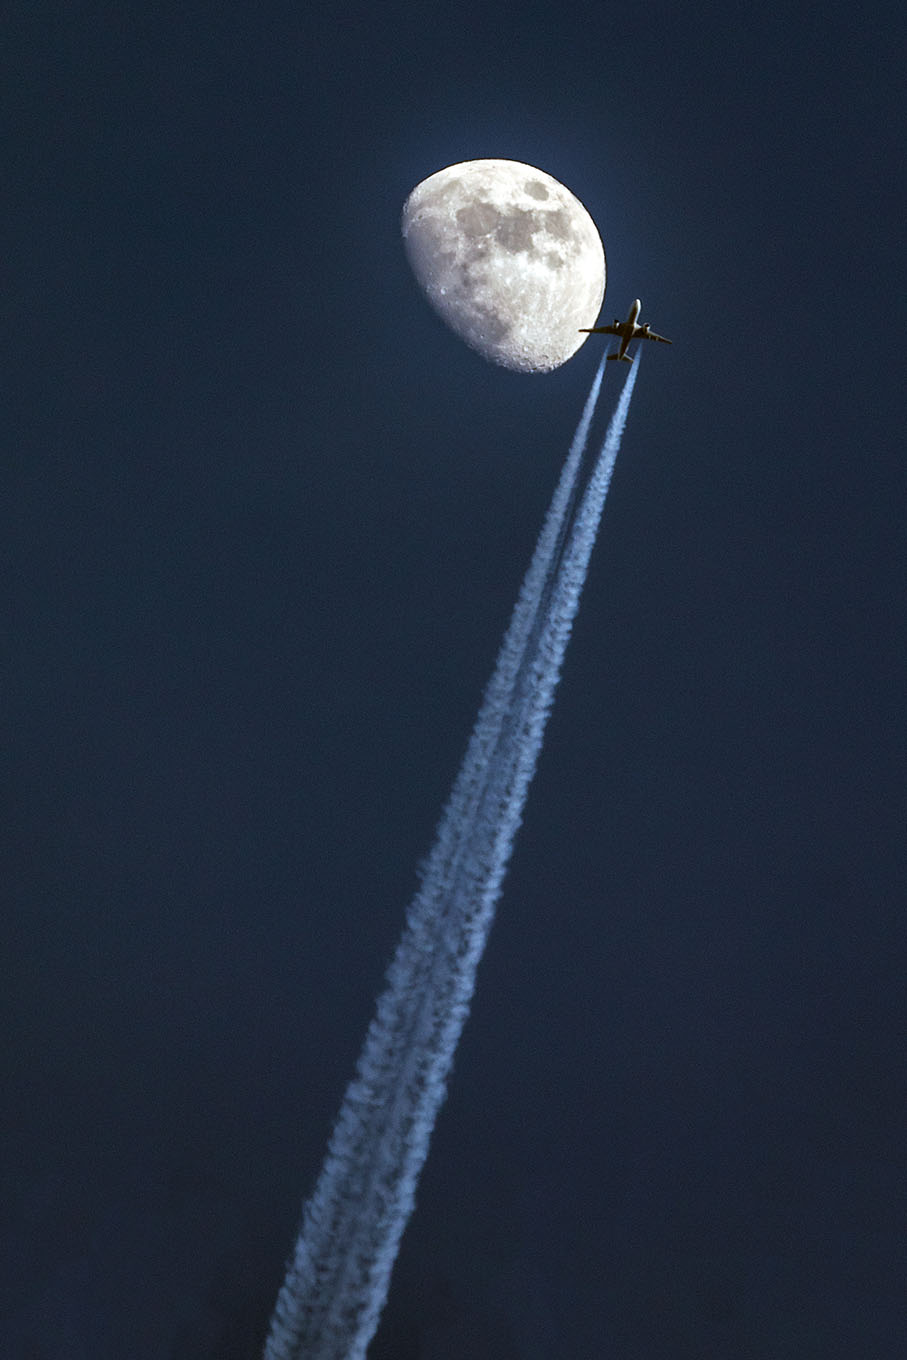 jet flies by moon